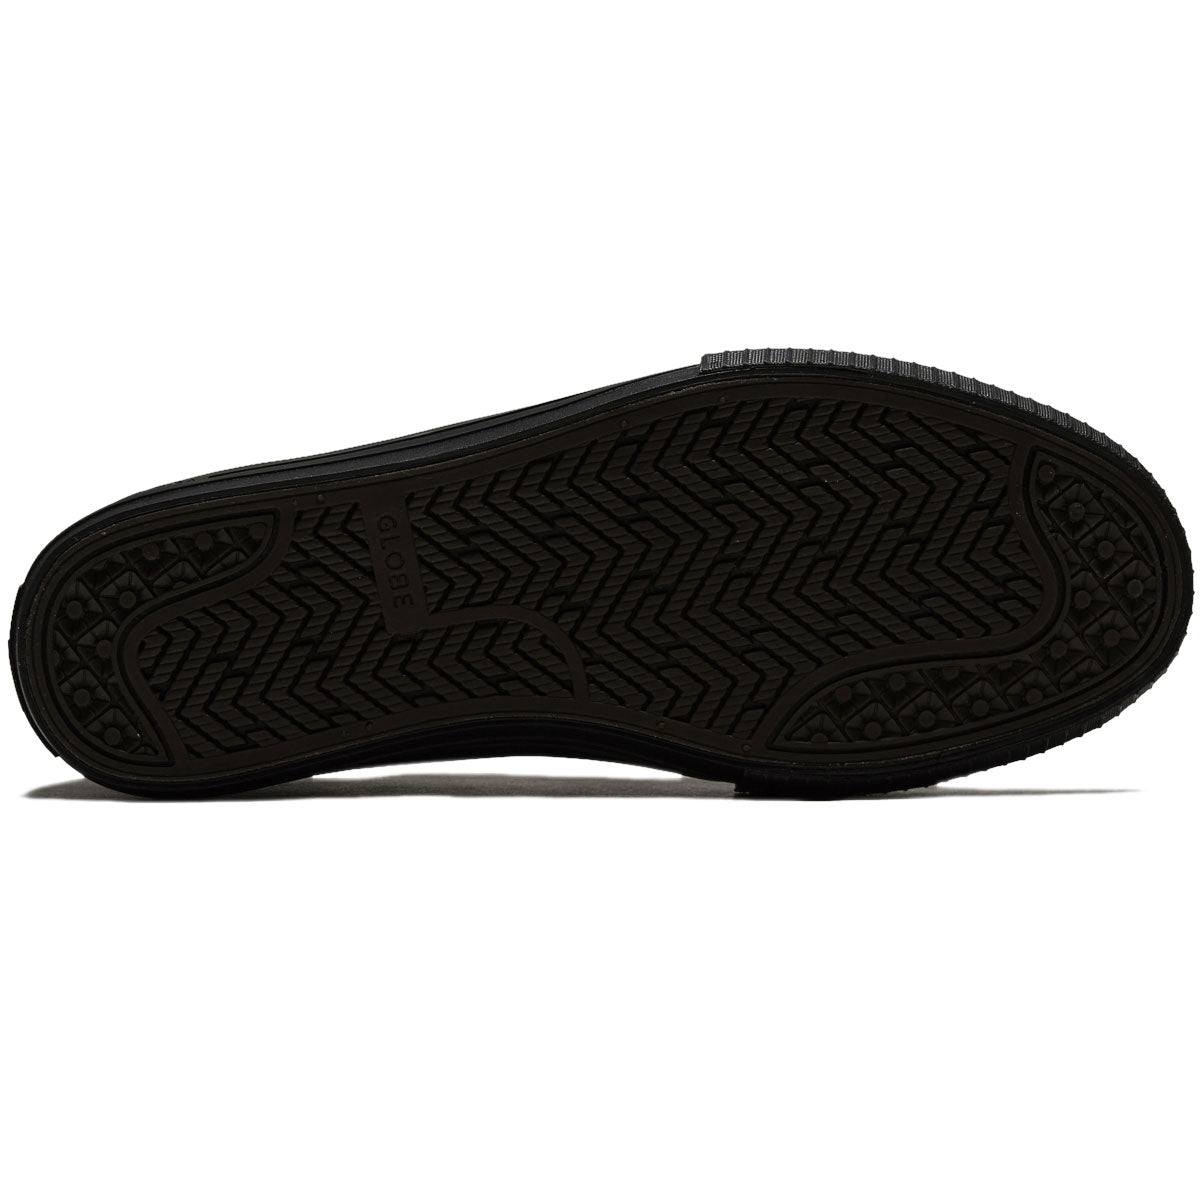 Globe Gillette Shoes - Black/Black Suede image 4